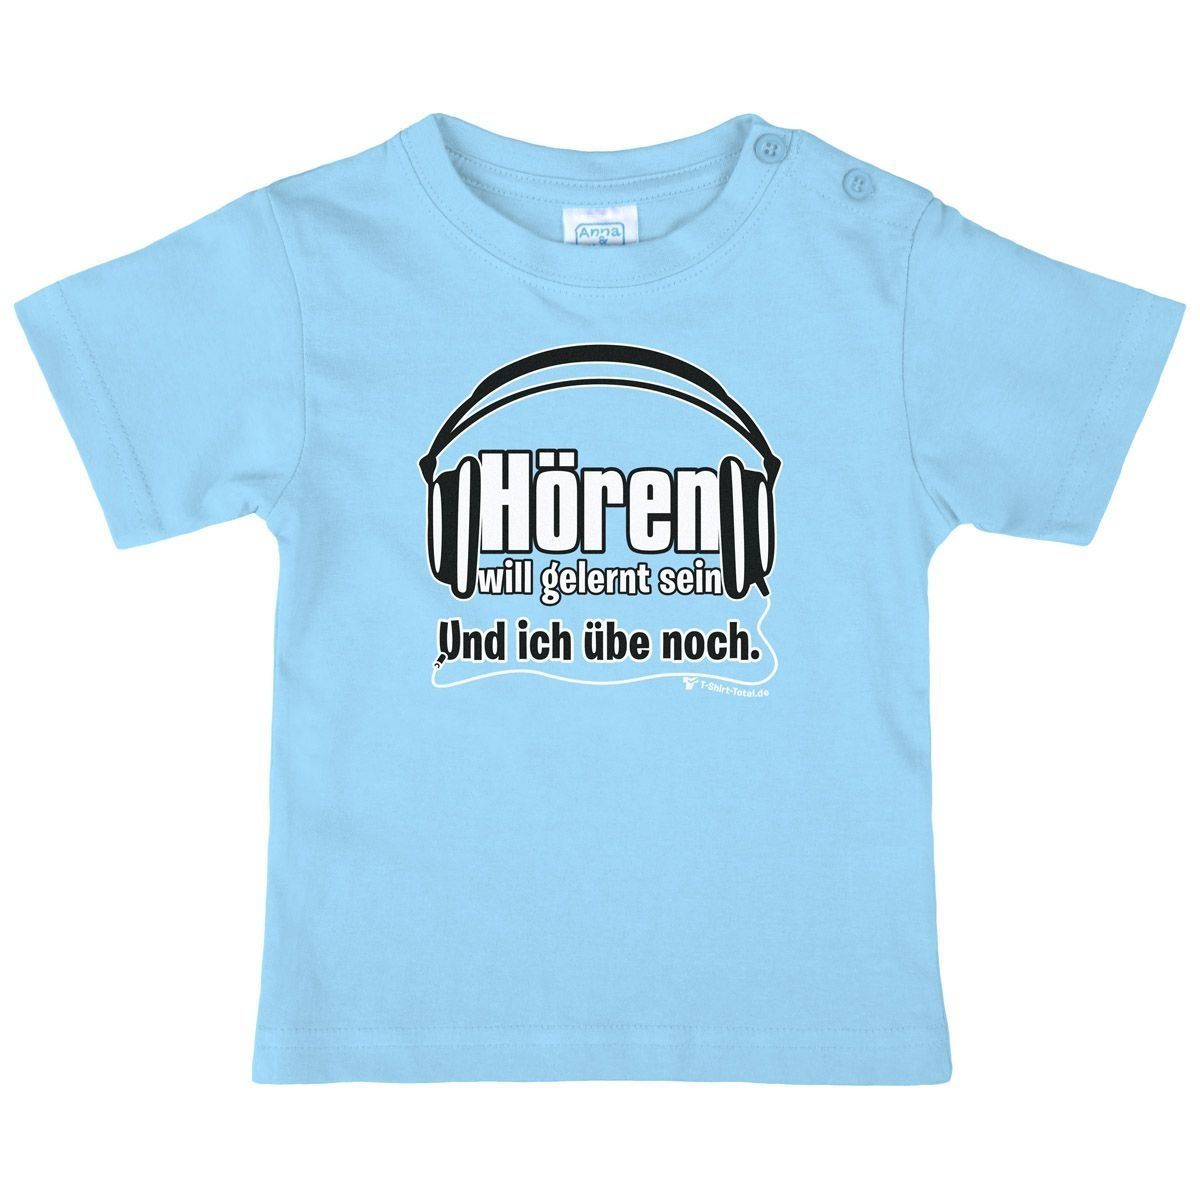 Hören will gelernt sein Kinder T-Shirt hellblau 104